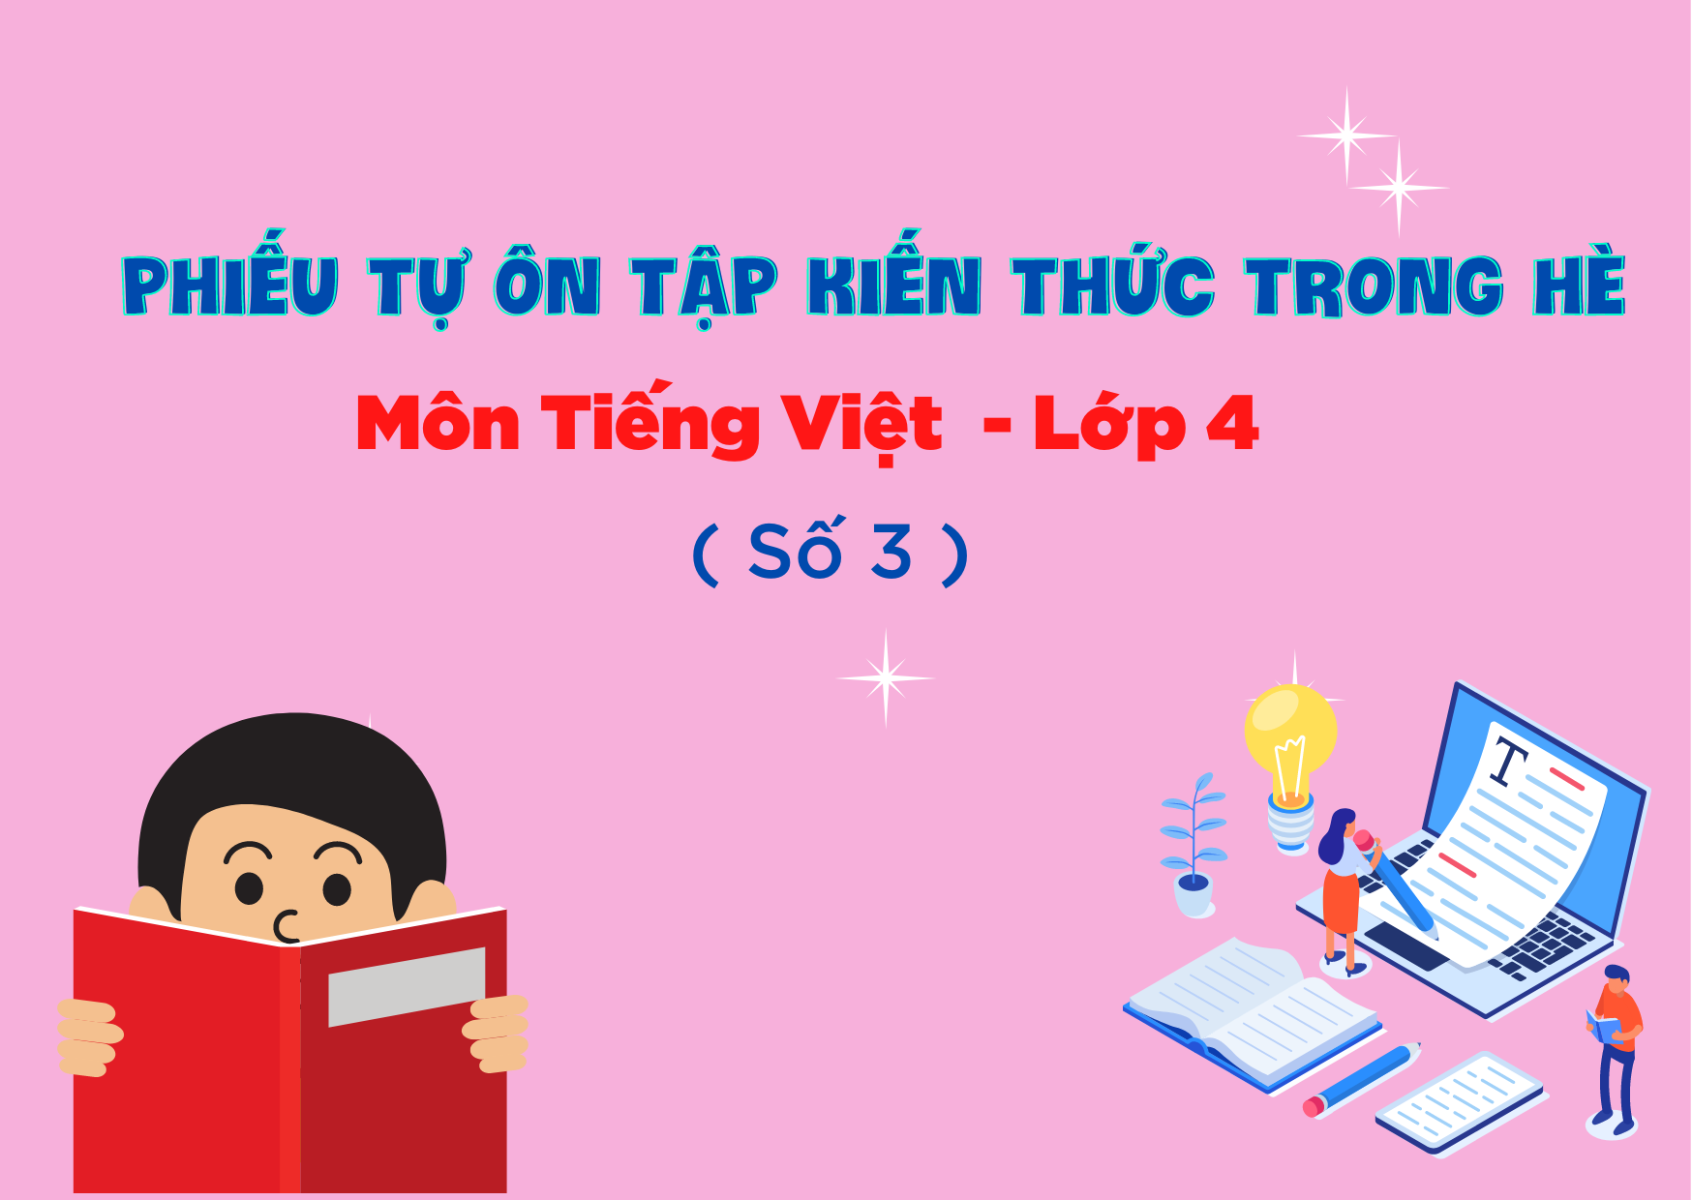 Phiếu tự ôn tập kiến thức trong hè môn Tiếng Việt - Lớp 4 ( Số 3)